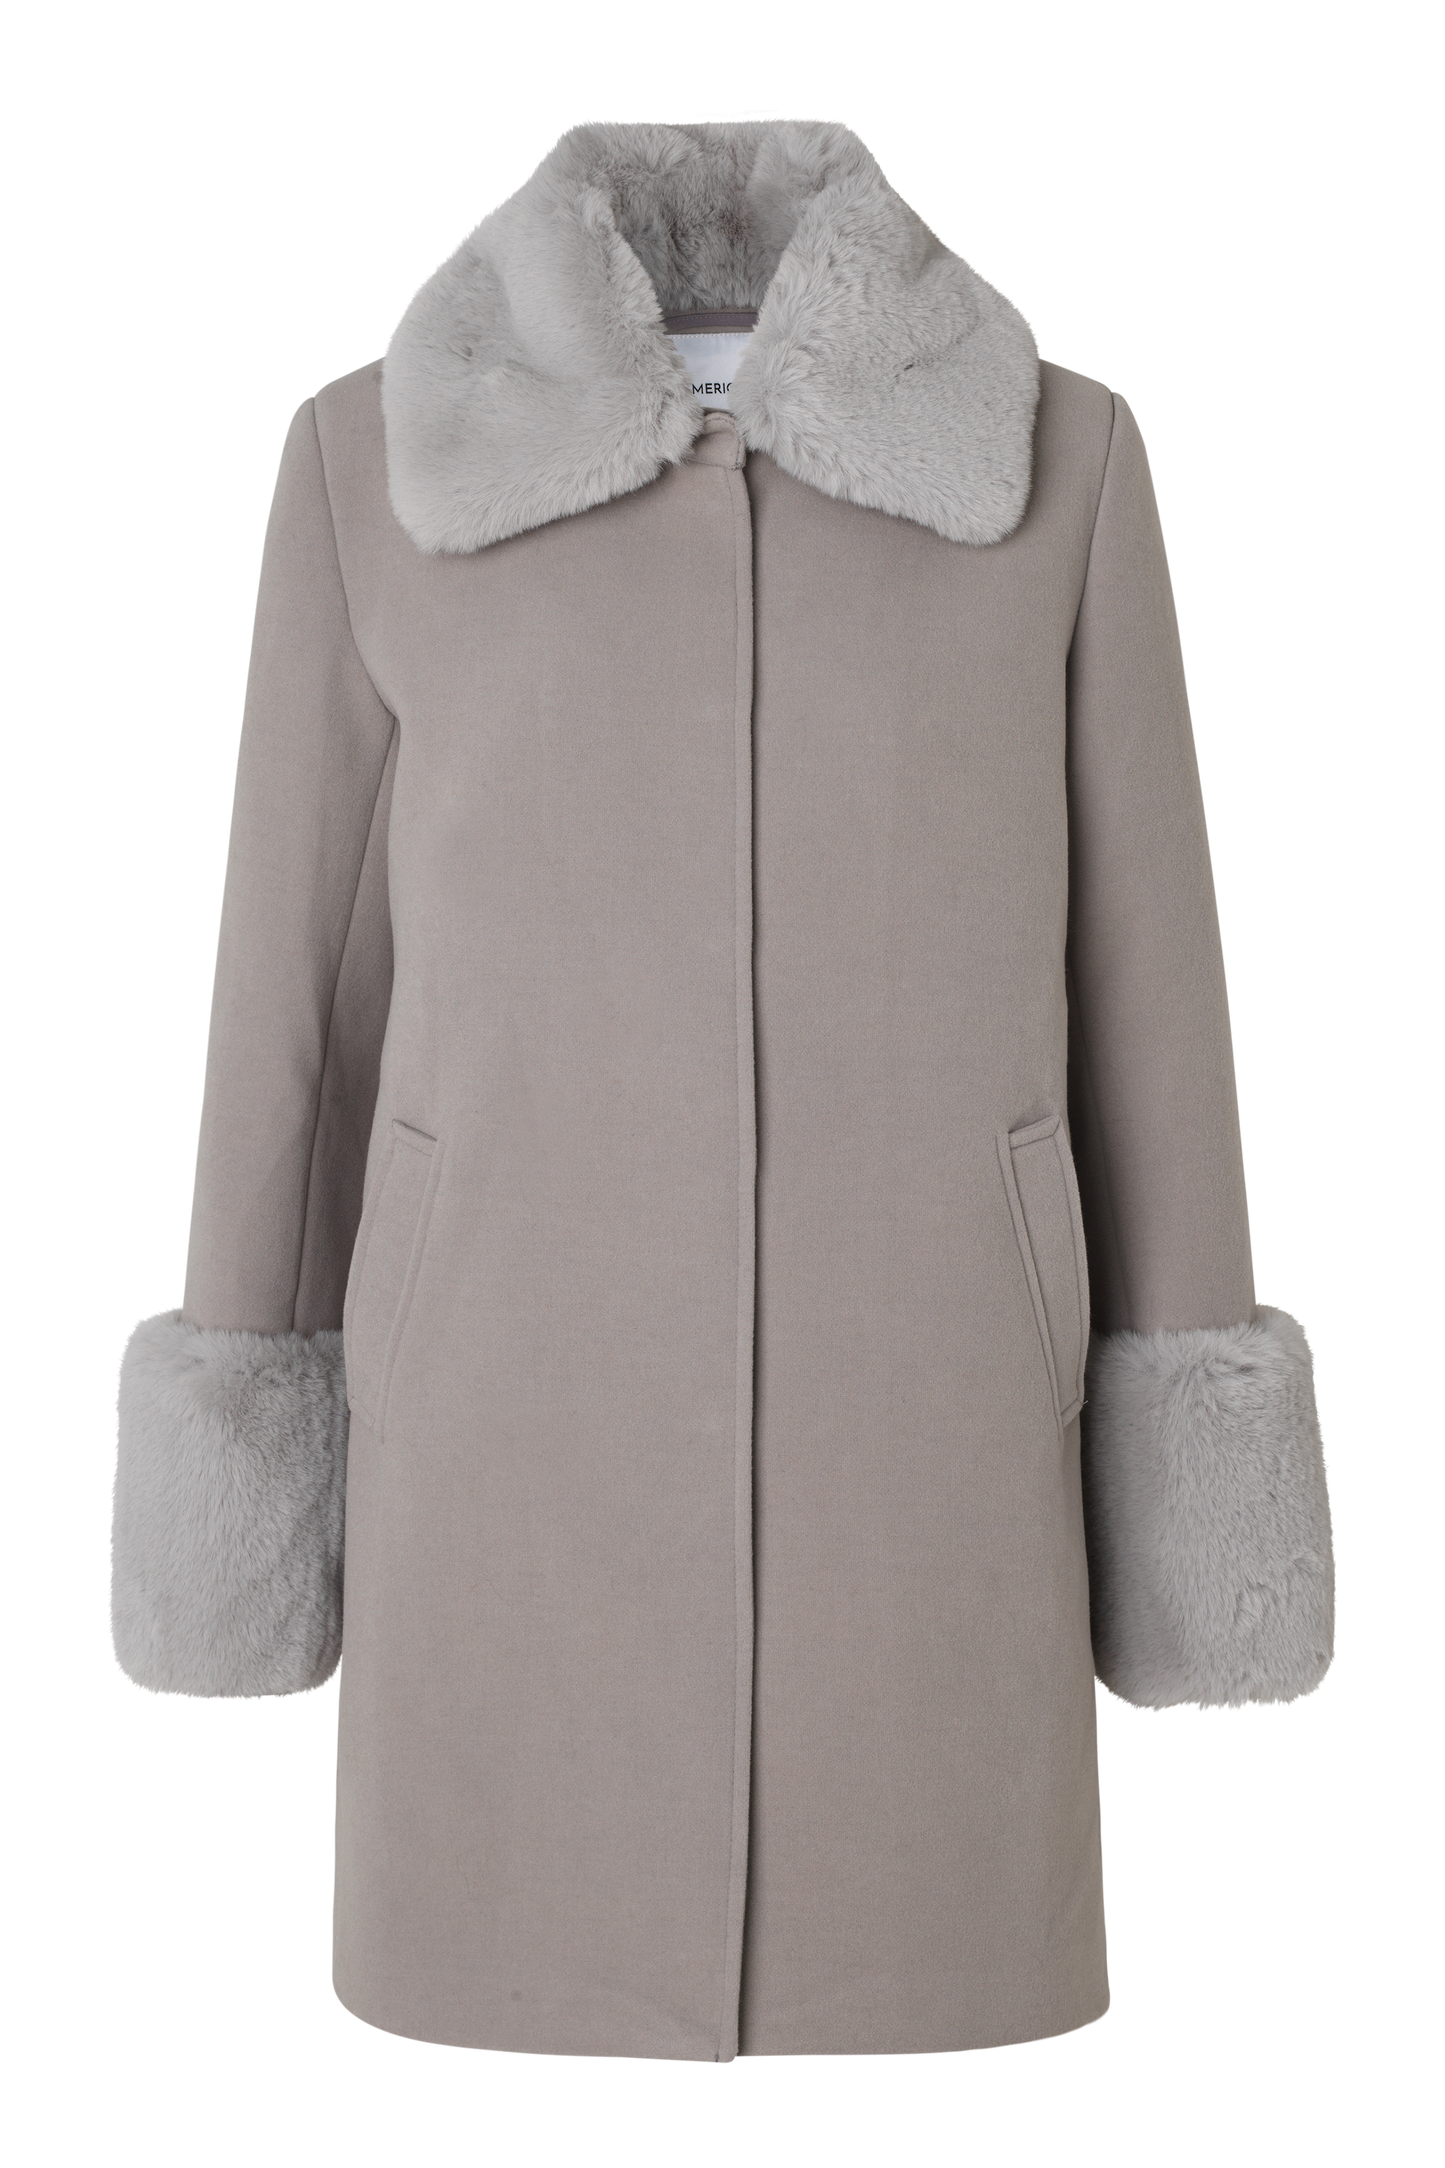 Sarah Faux Fur Jacket Long Light Grey - Sample